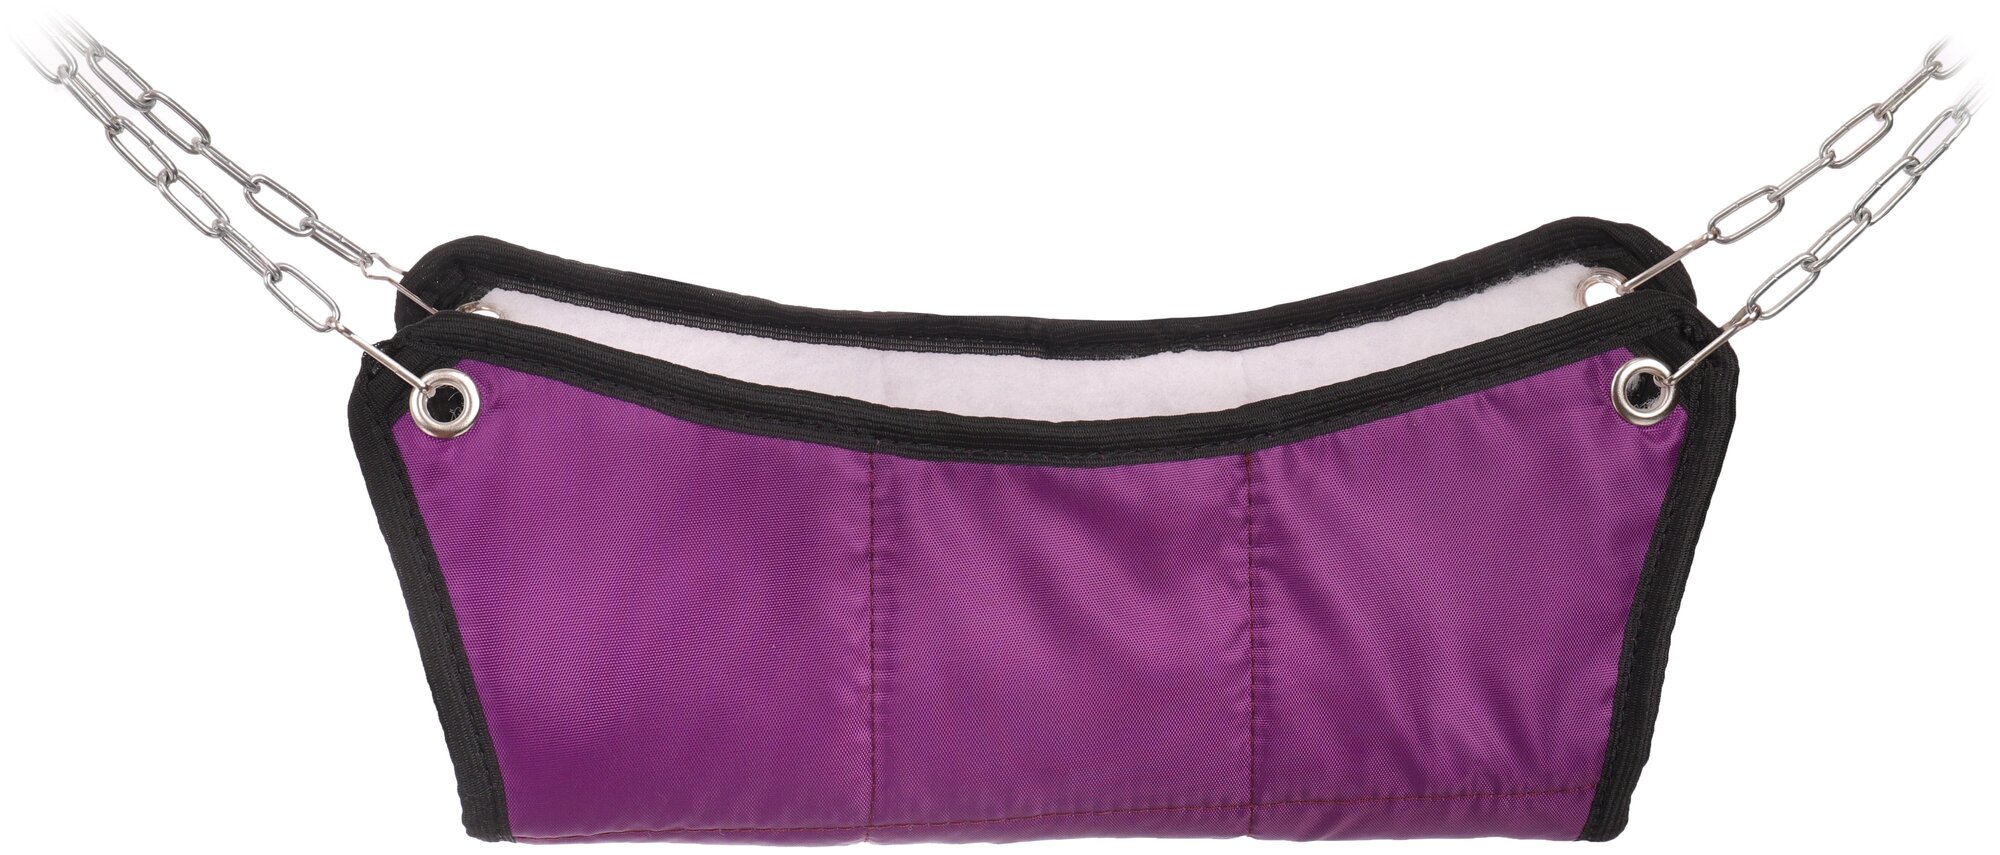 Гамак для хорьков и мелких грызунов "Шустрик", цвет: тёмно-фиолетовый, 30х30 см.